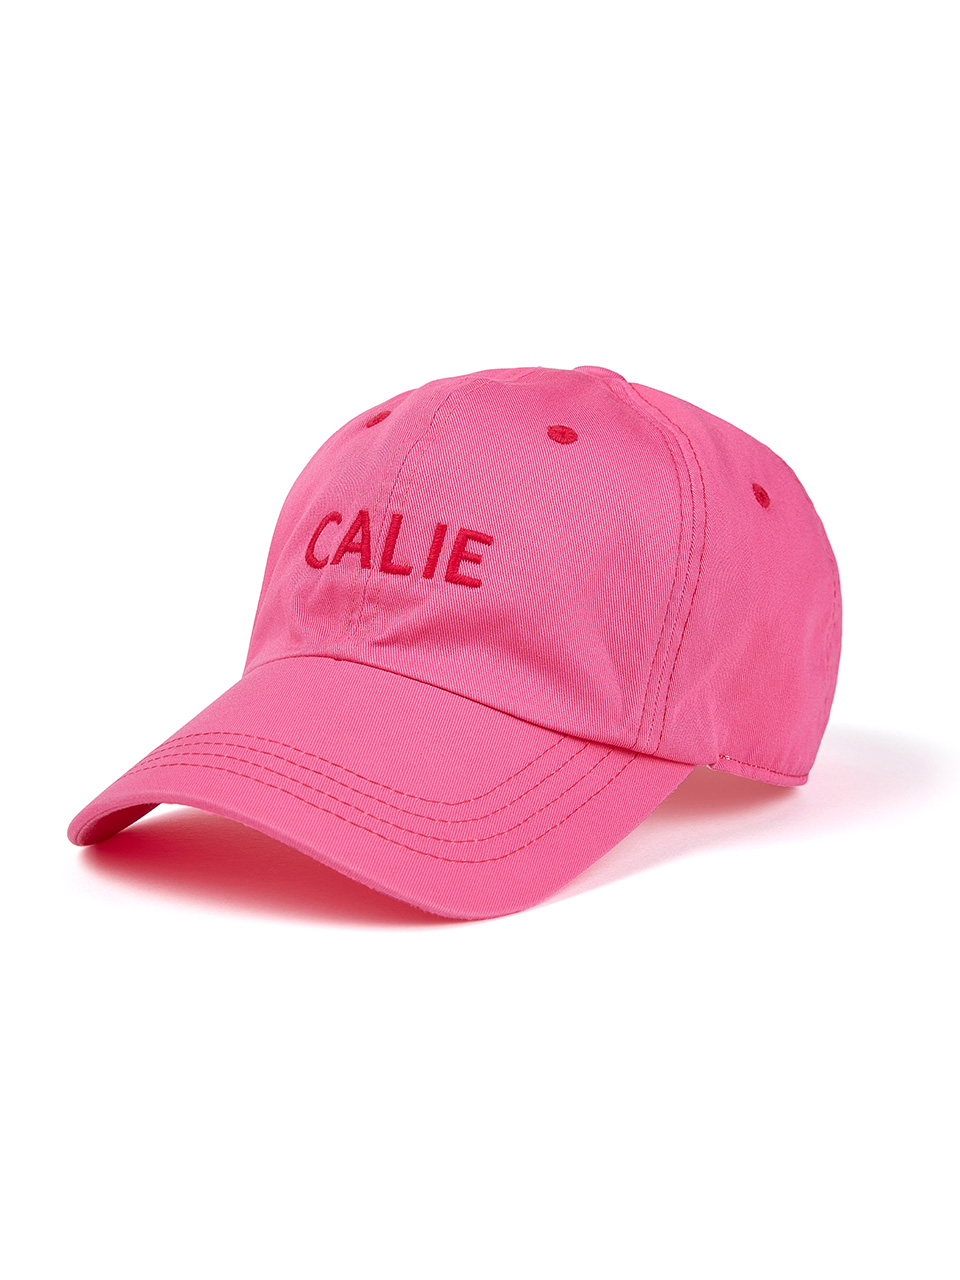 CALIE STITCH BALL CAP PINK - asif_Calie